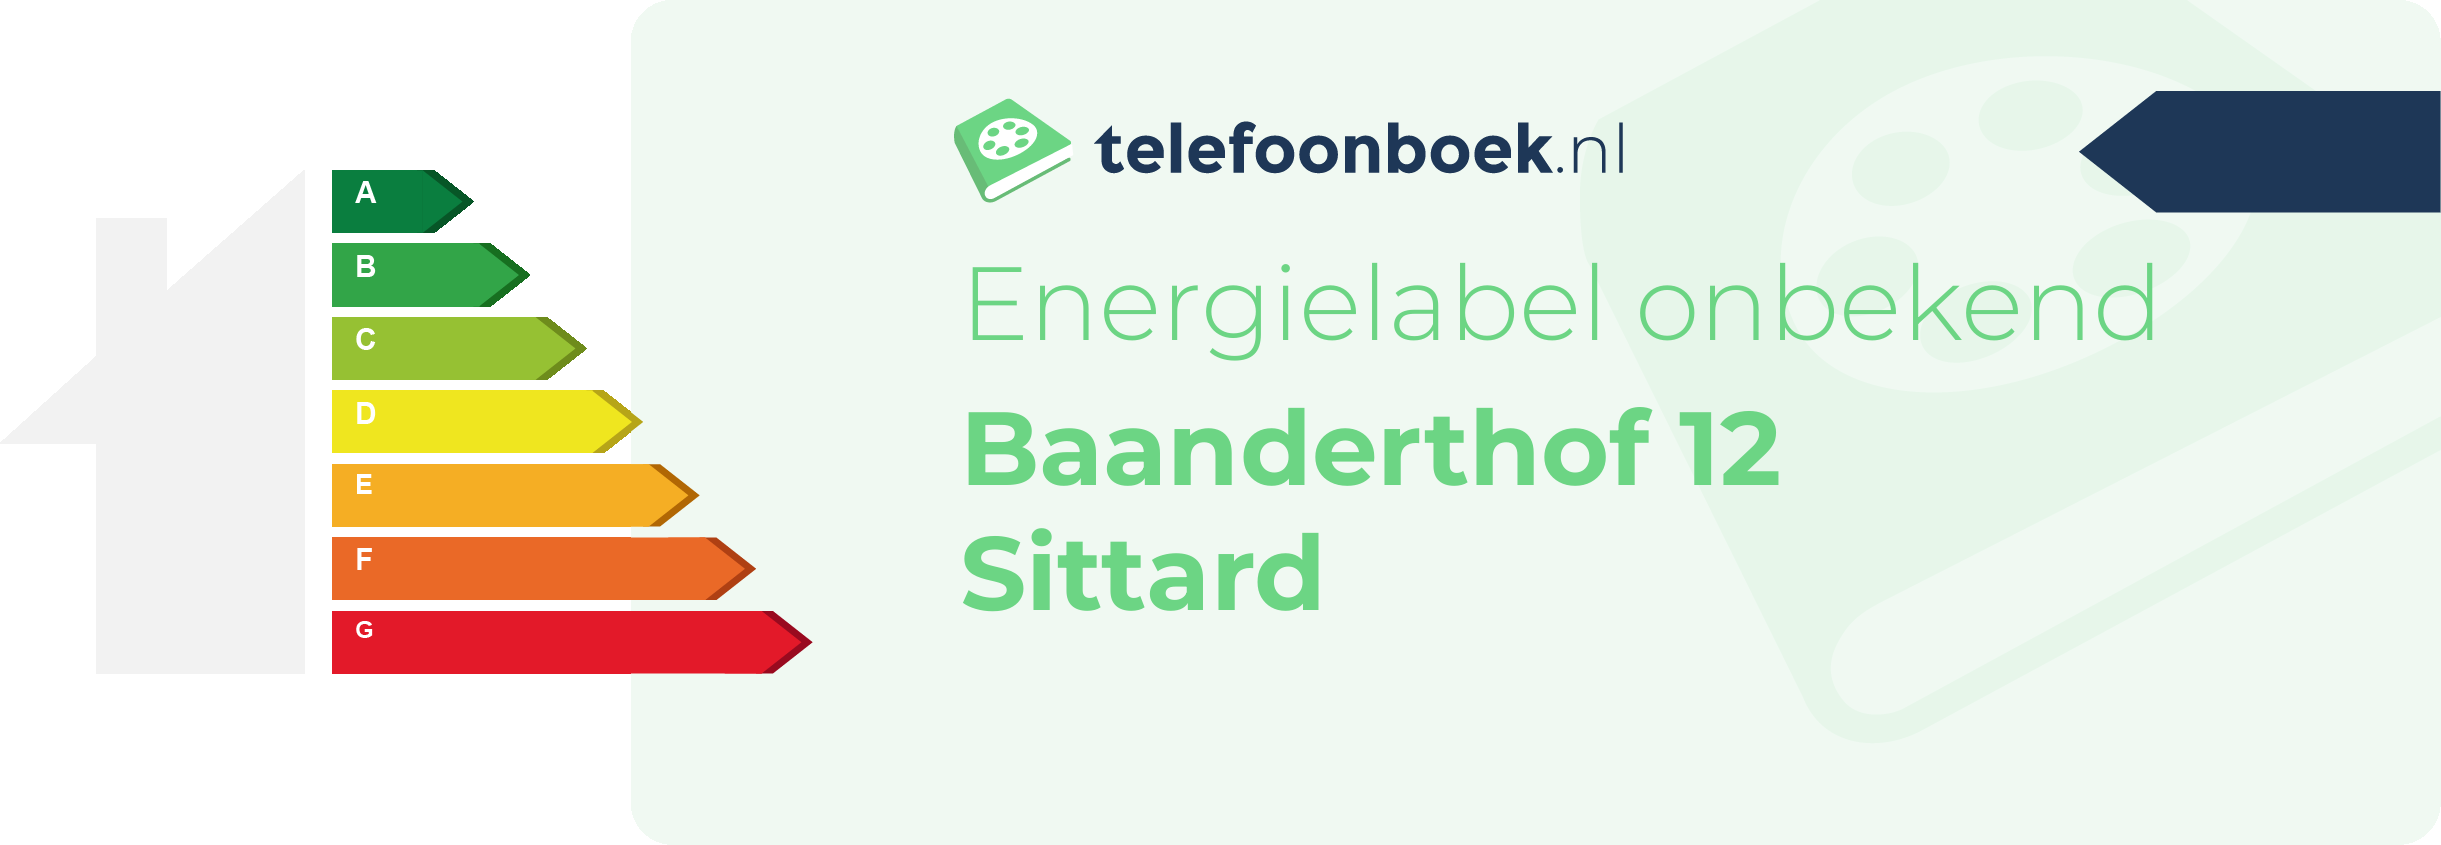 Energielabel Baanderthof 12 Sittard